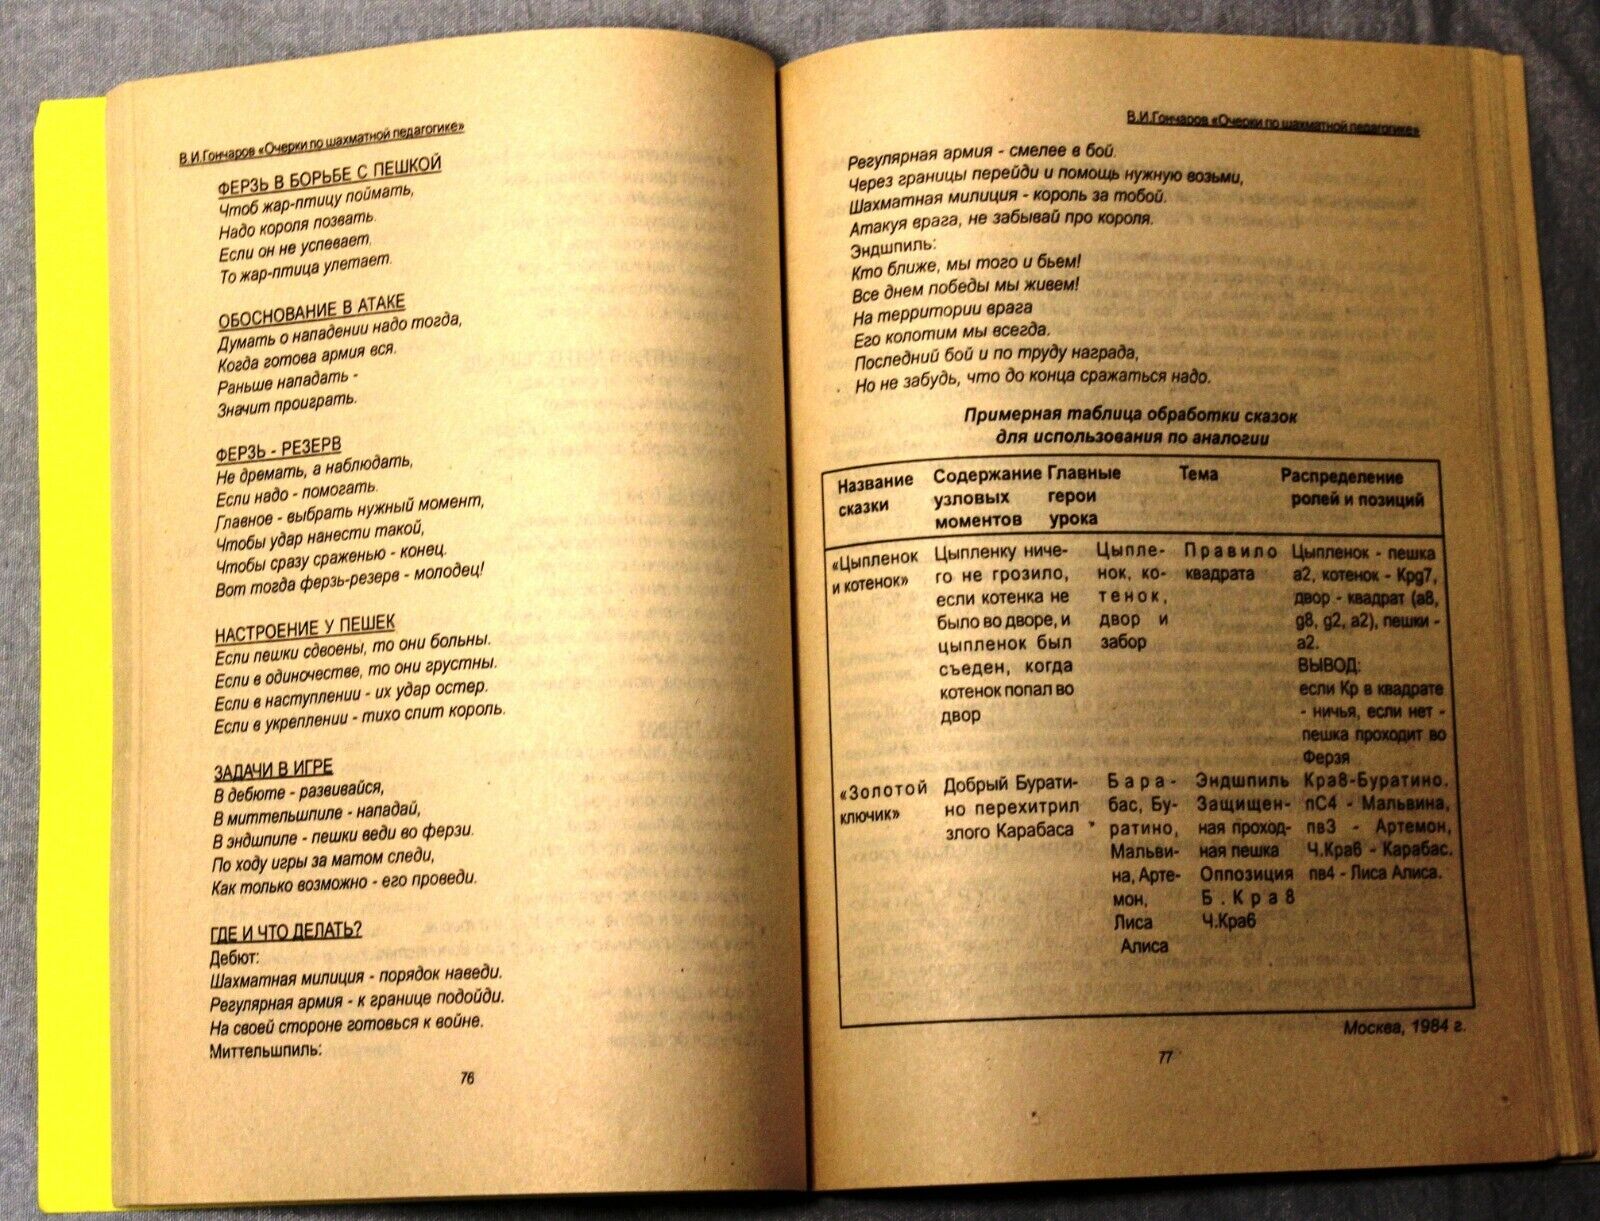 11487.Russian Chess Book. Essays on chess pedagogy. Naberezhnye Chelny, 2002